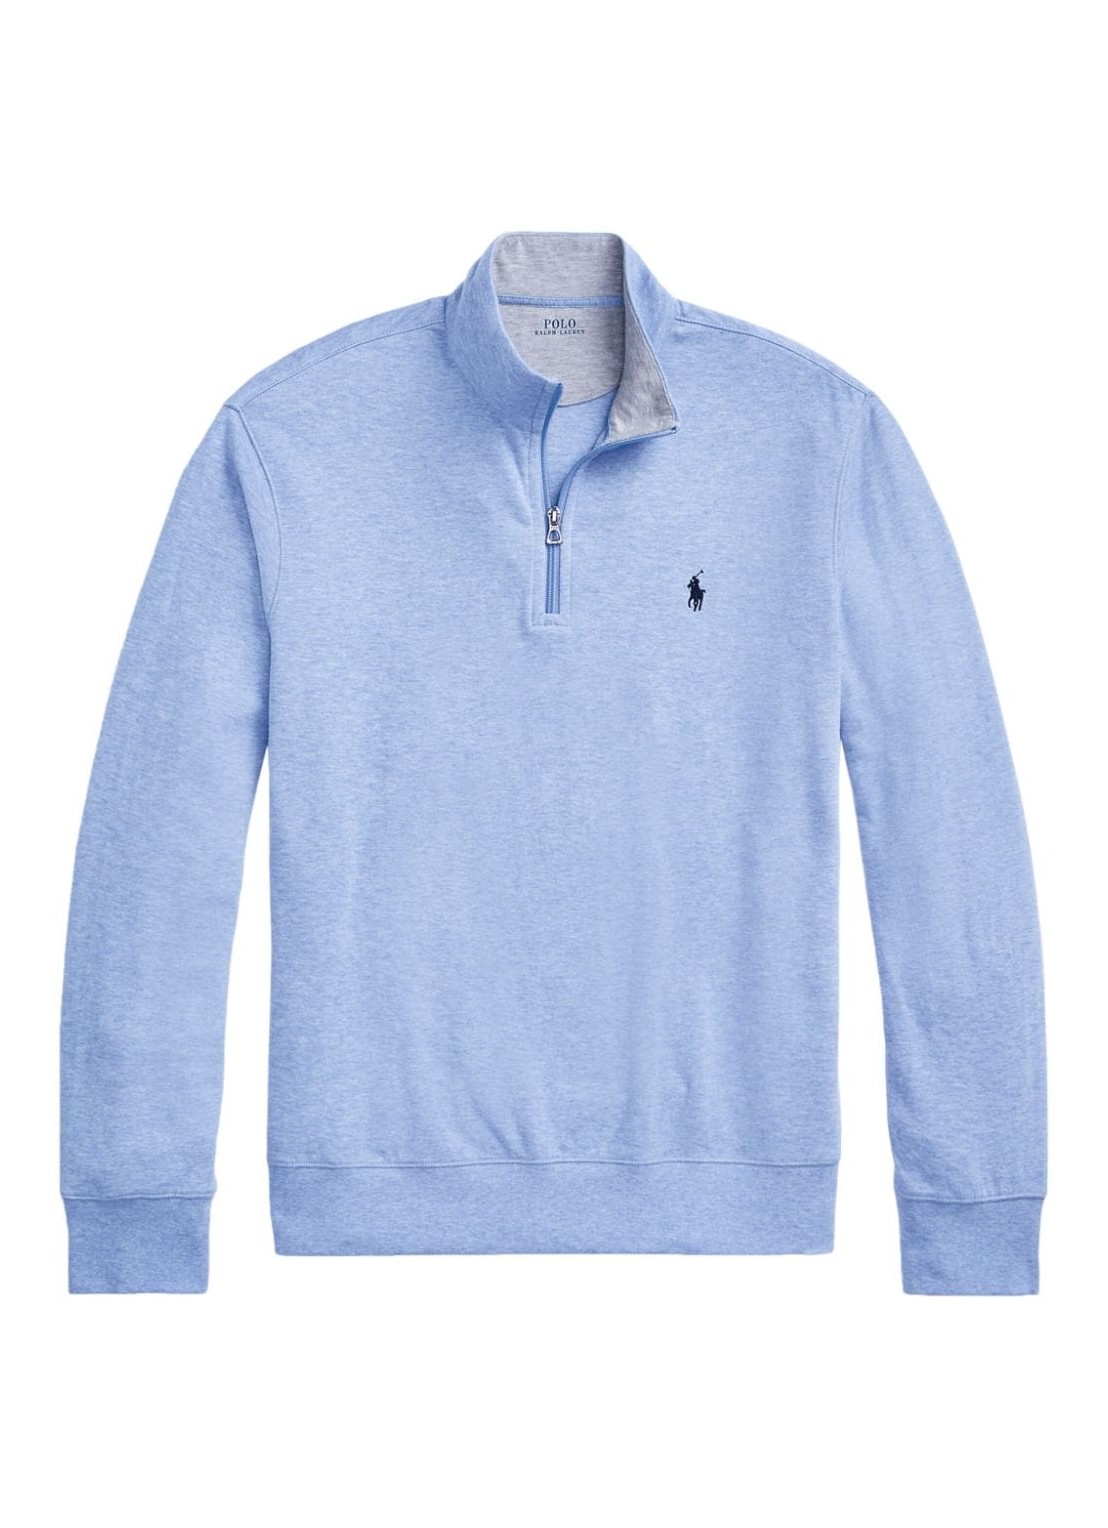 Ralph Lauren Blue Label Tops | Polo Ralph Lauren Southwestern Aztec Knit Oxford Shirt Taupe | Color: Brown/Tan | Size: XL | Anarodriguez109's Closet